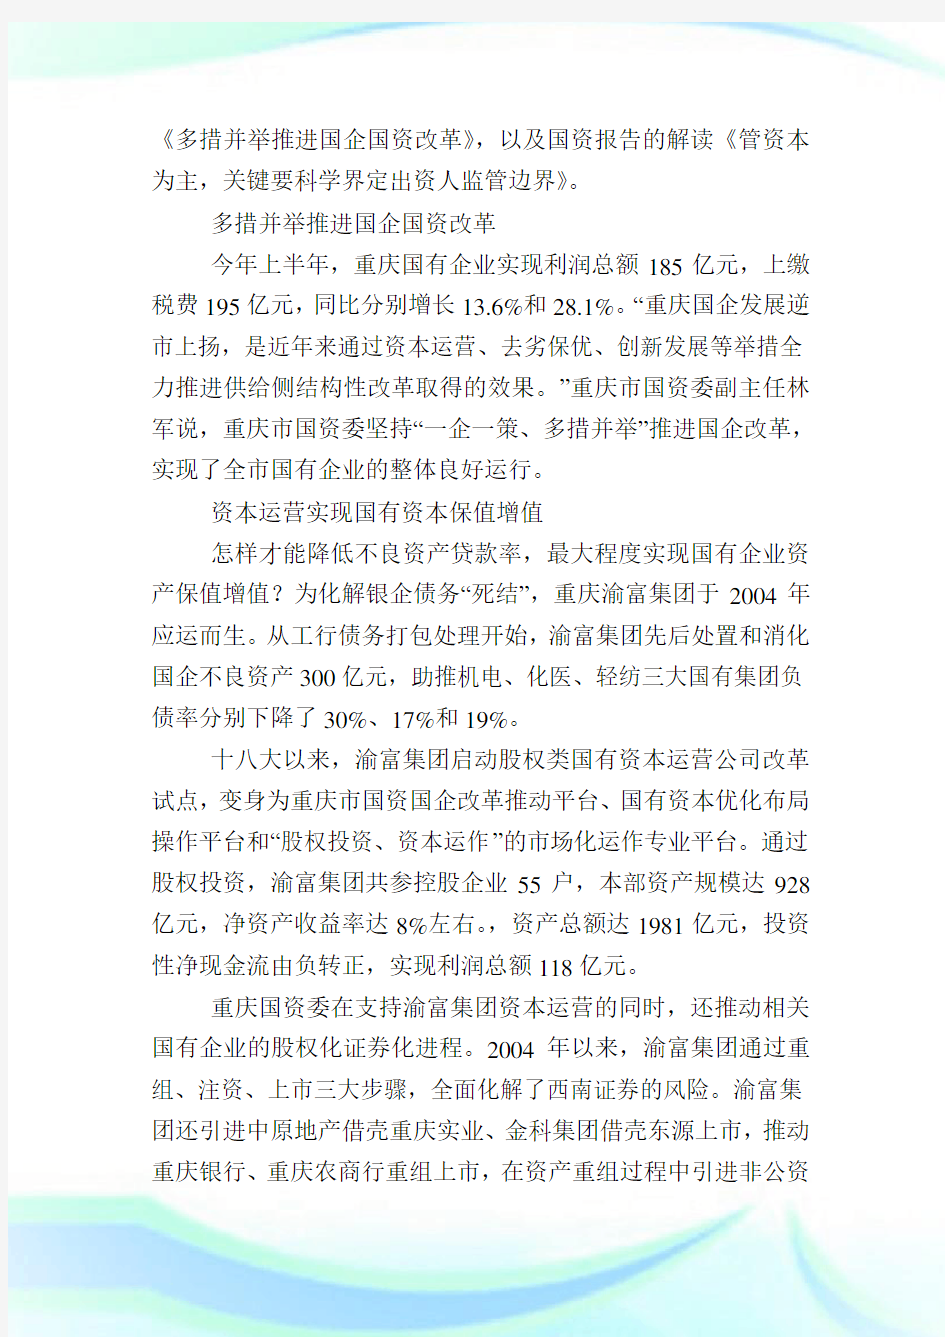 重庆国企改革方案最新消息,重庆深化国有企业改革的指导意见.doc